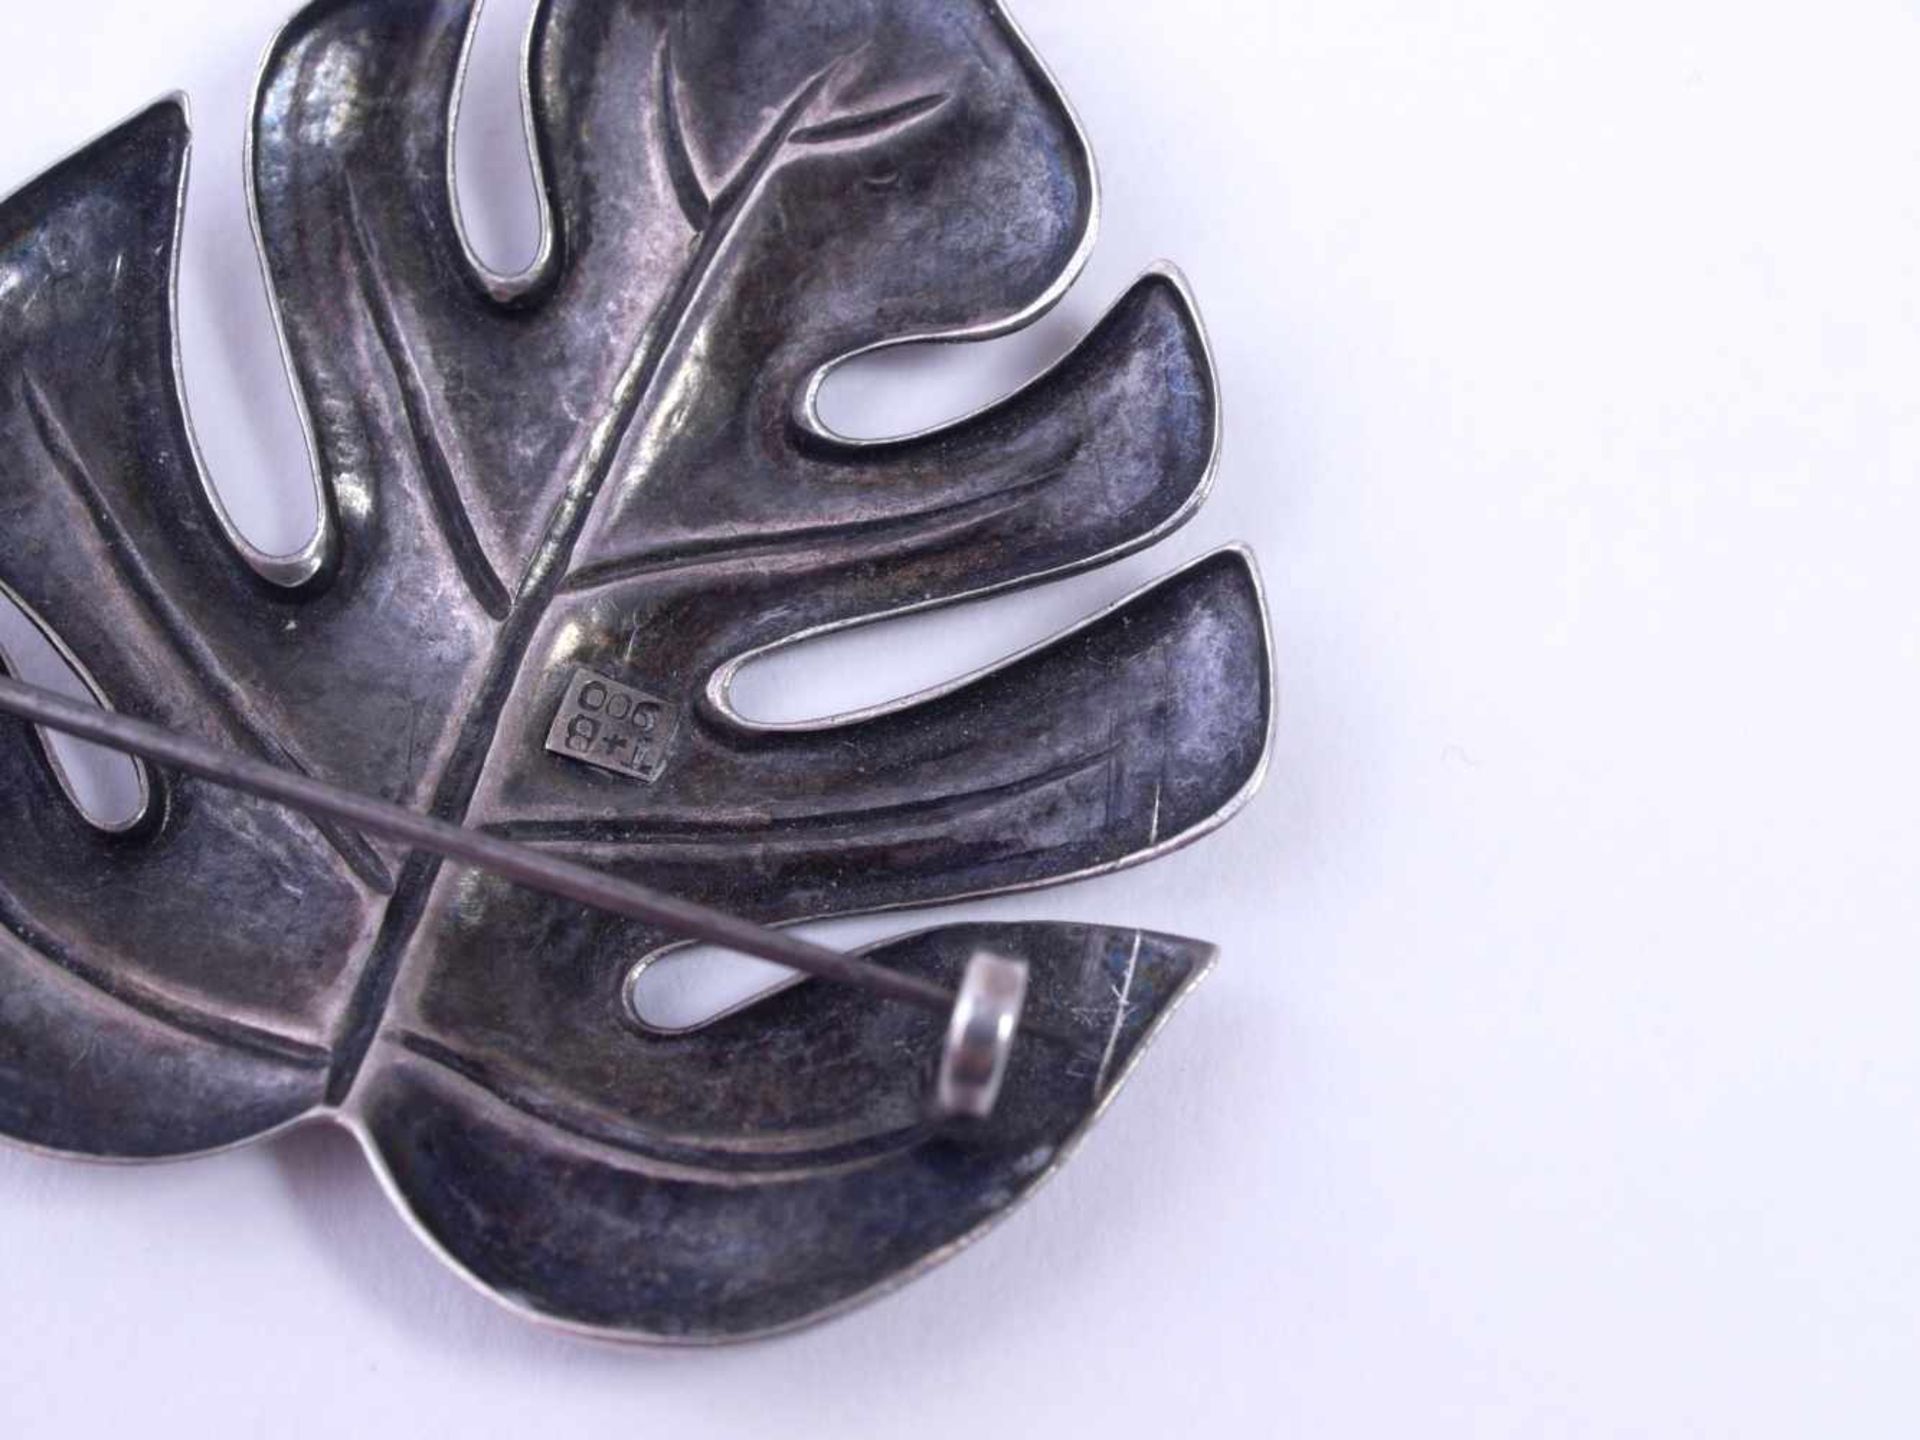 Blattbrosche Silber 900Naturalistisch einem Palmettenblatt nachempfundene dekorative Brosche in - Bild 3 aus 3